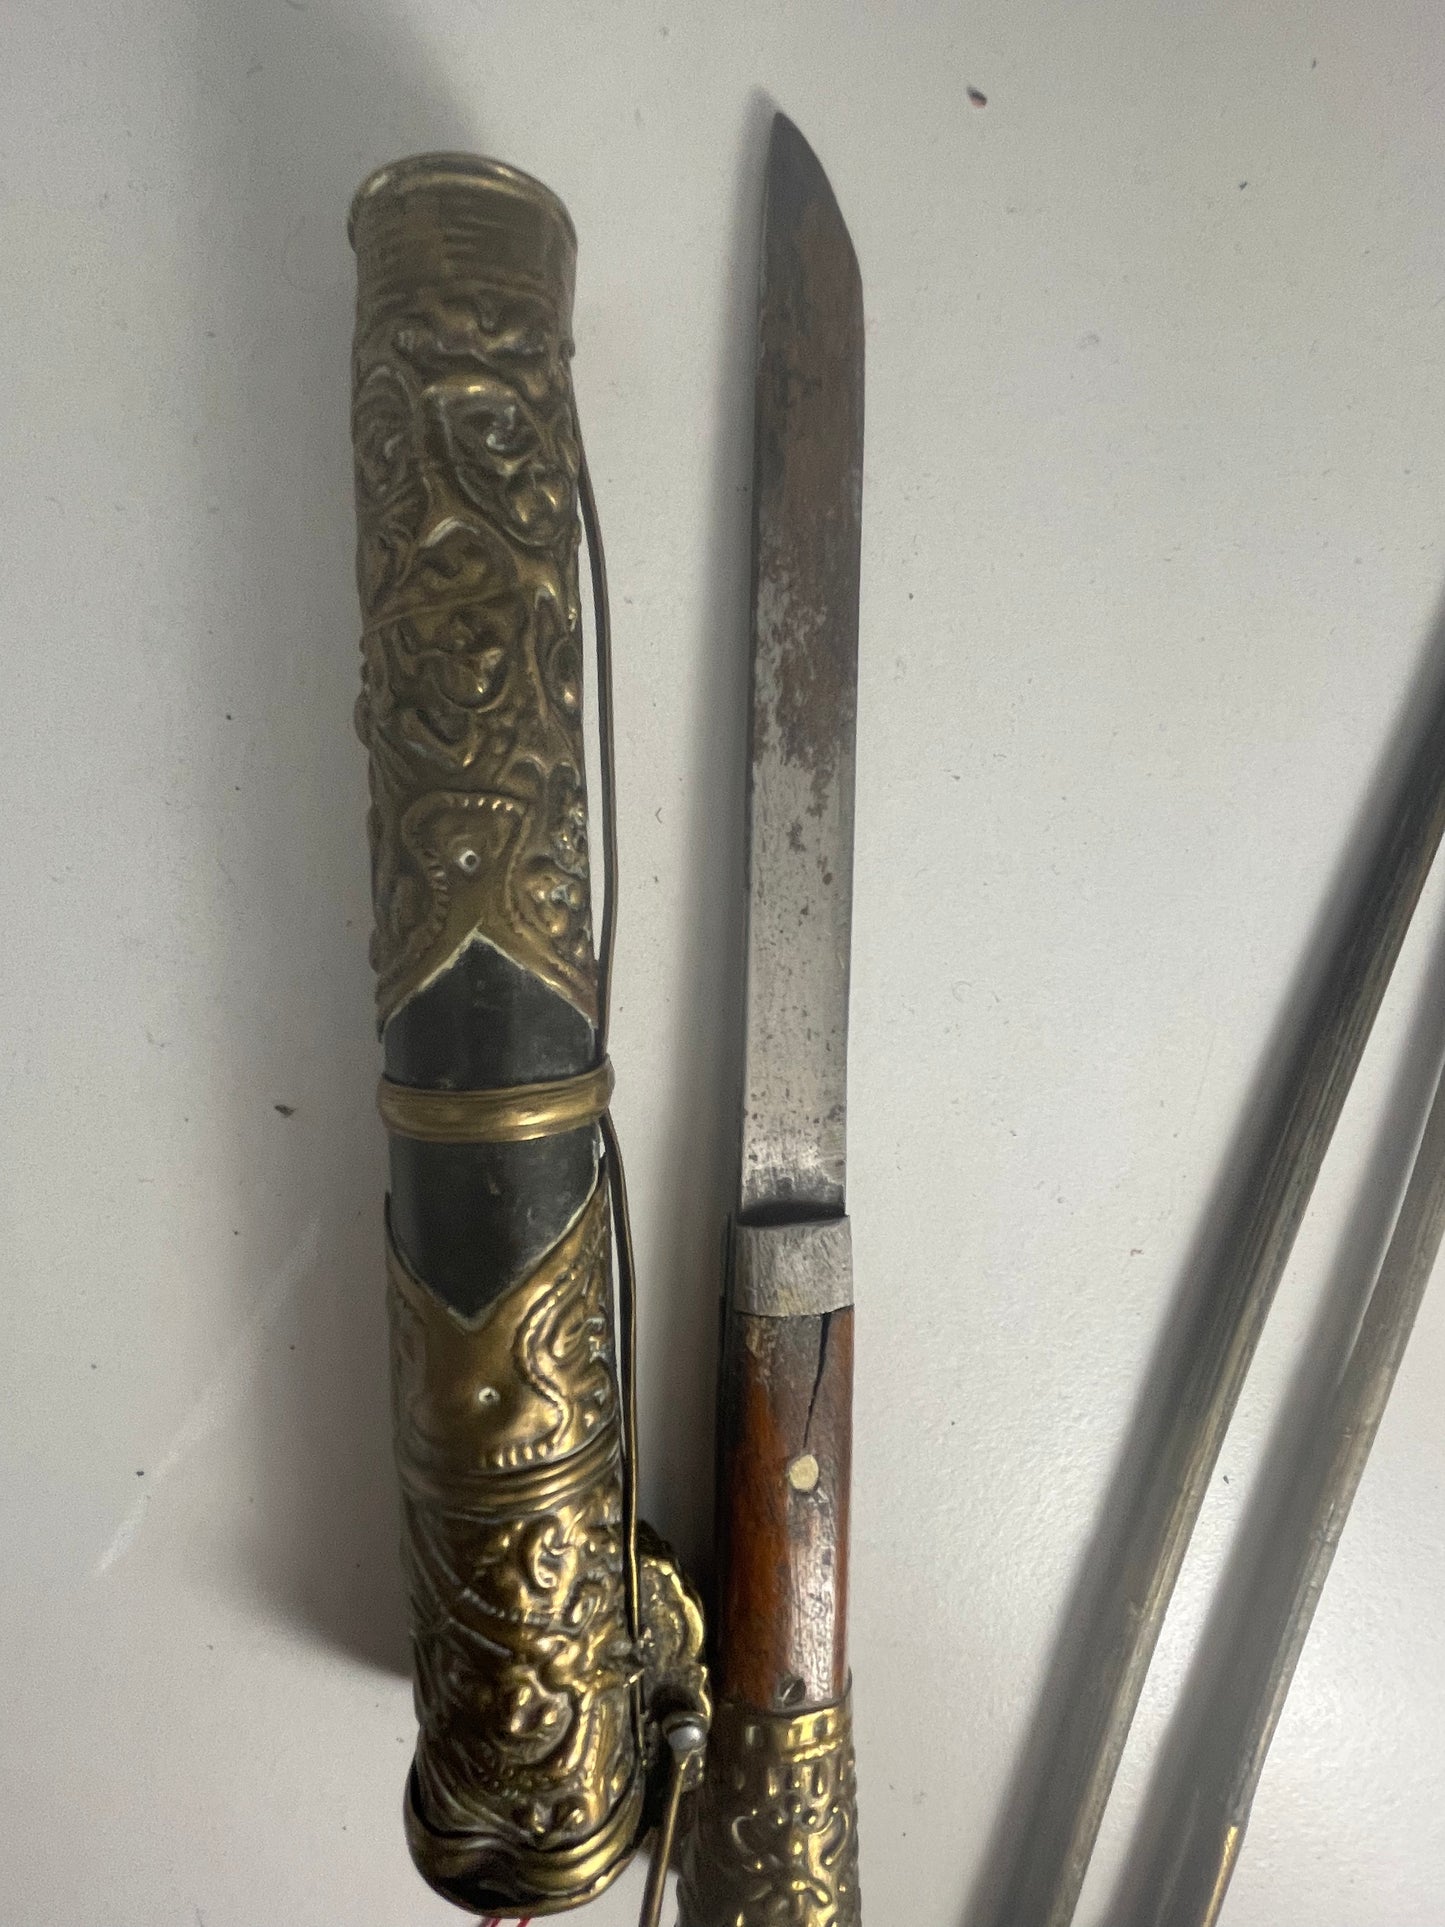 A vintage traveling dagger and chopsticks set